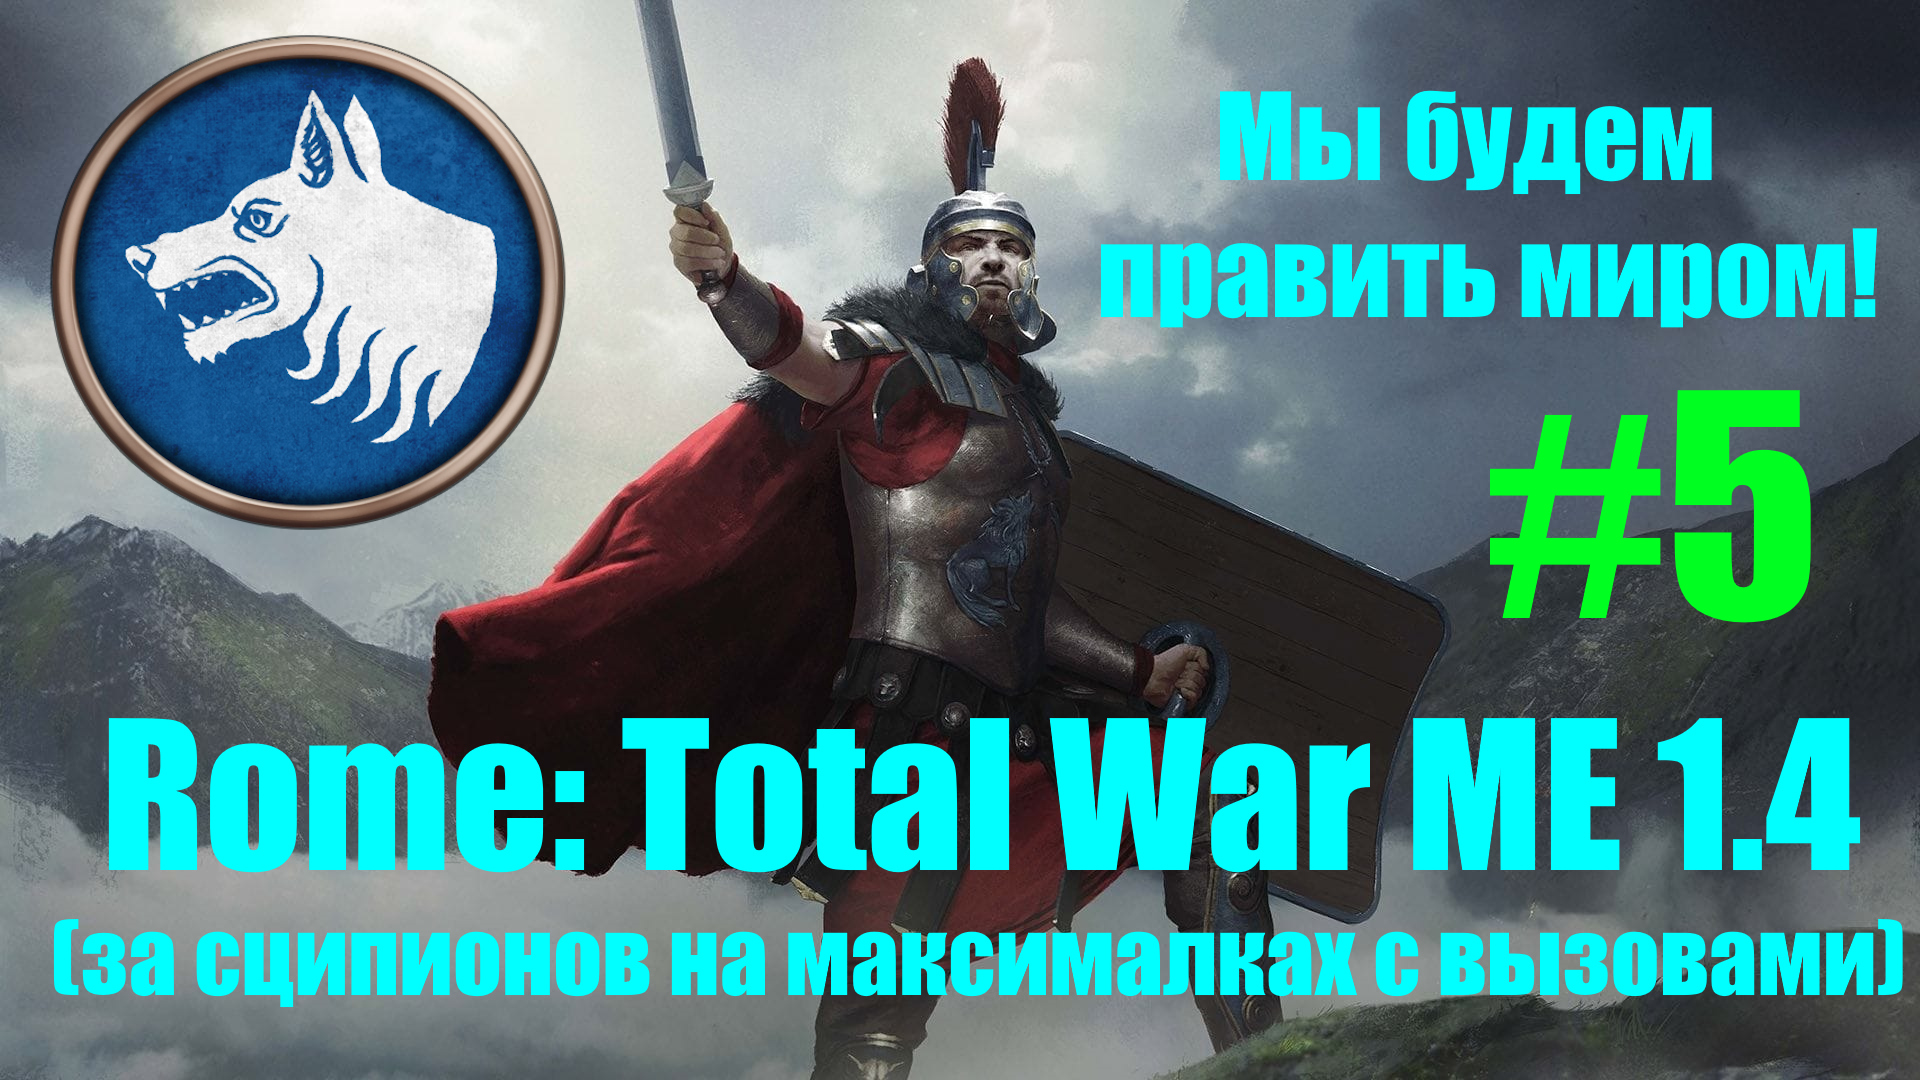 Macedon Expansion 1.4  (Rome: Total War). Мы будем править миром! #5